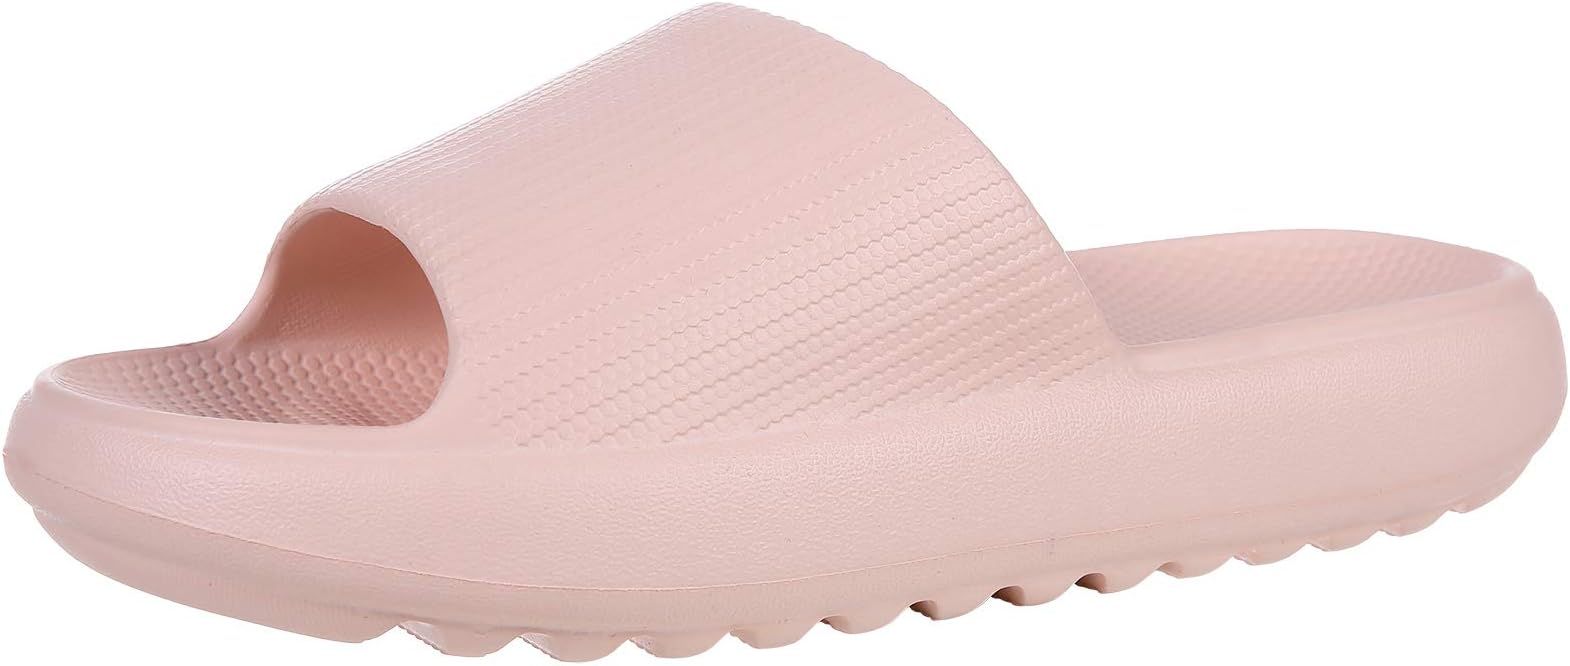 Pillow Slides Sandals for Women Men Lightweight Non-slip Shower Shoes Open Toe Slippers | Amazon (US)